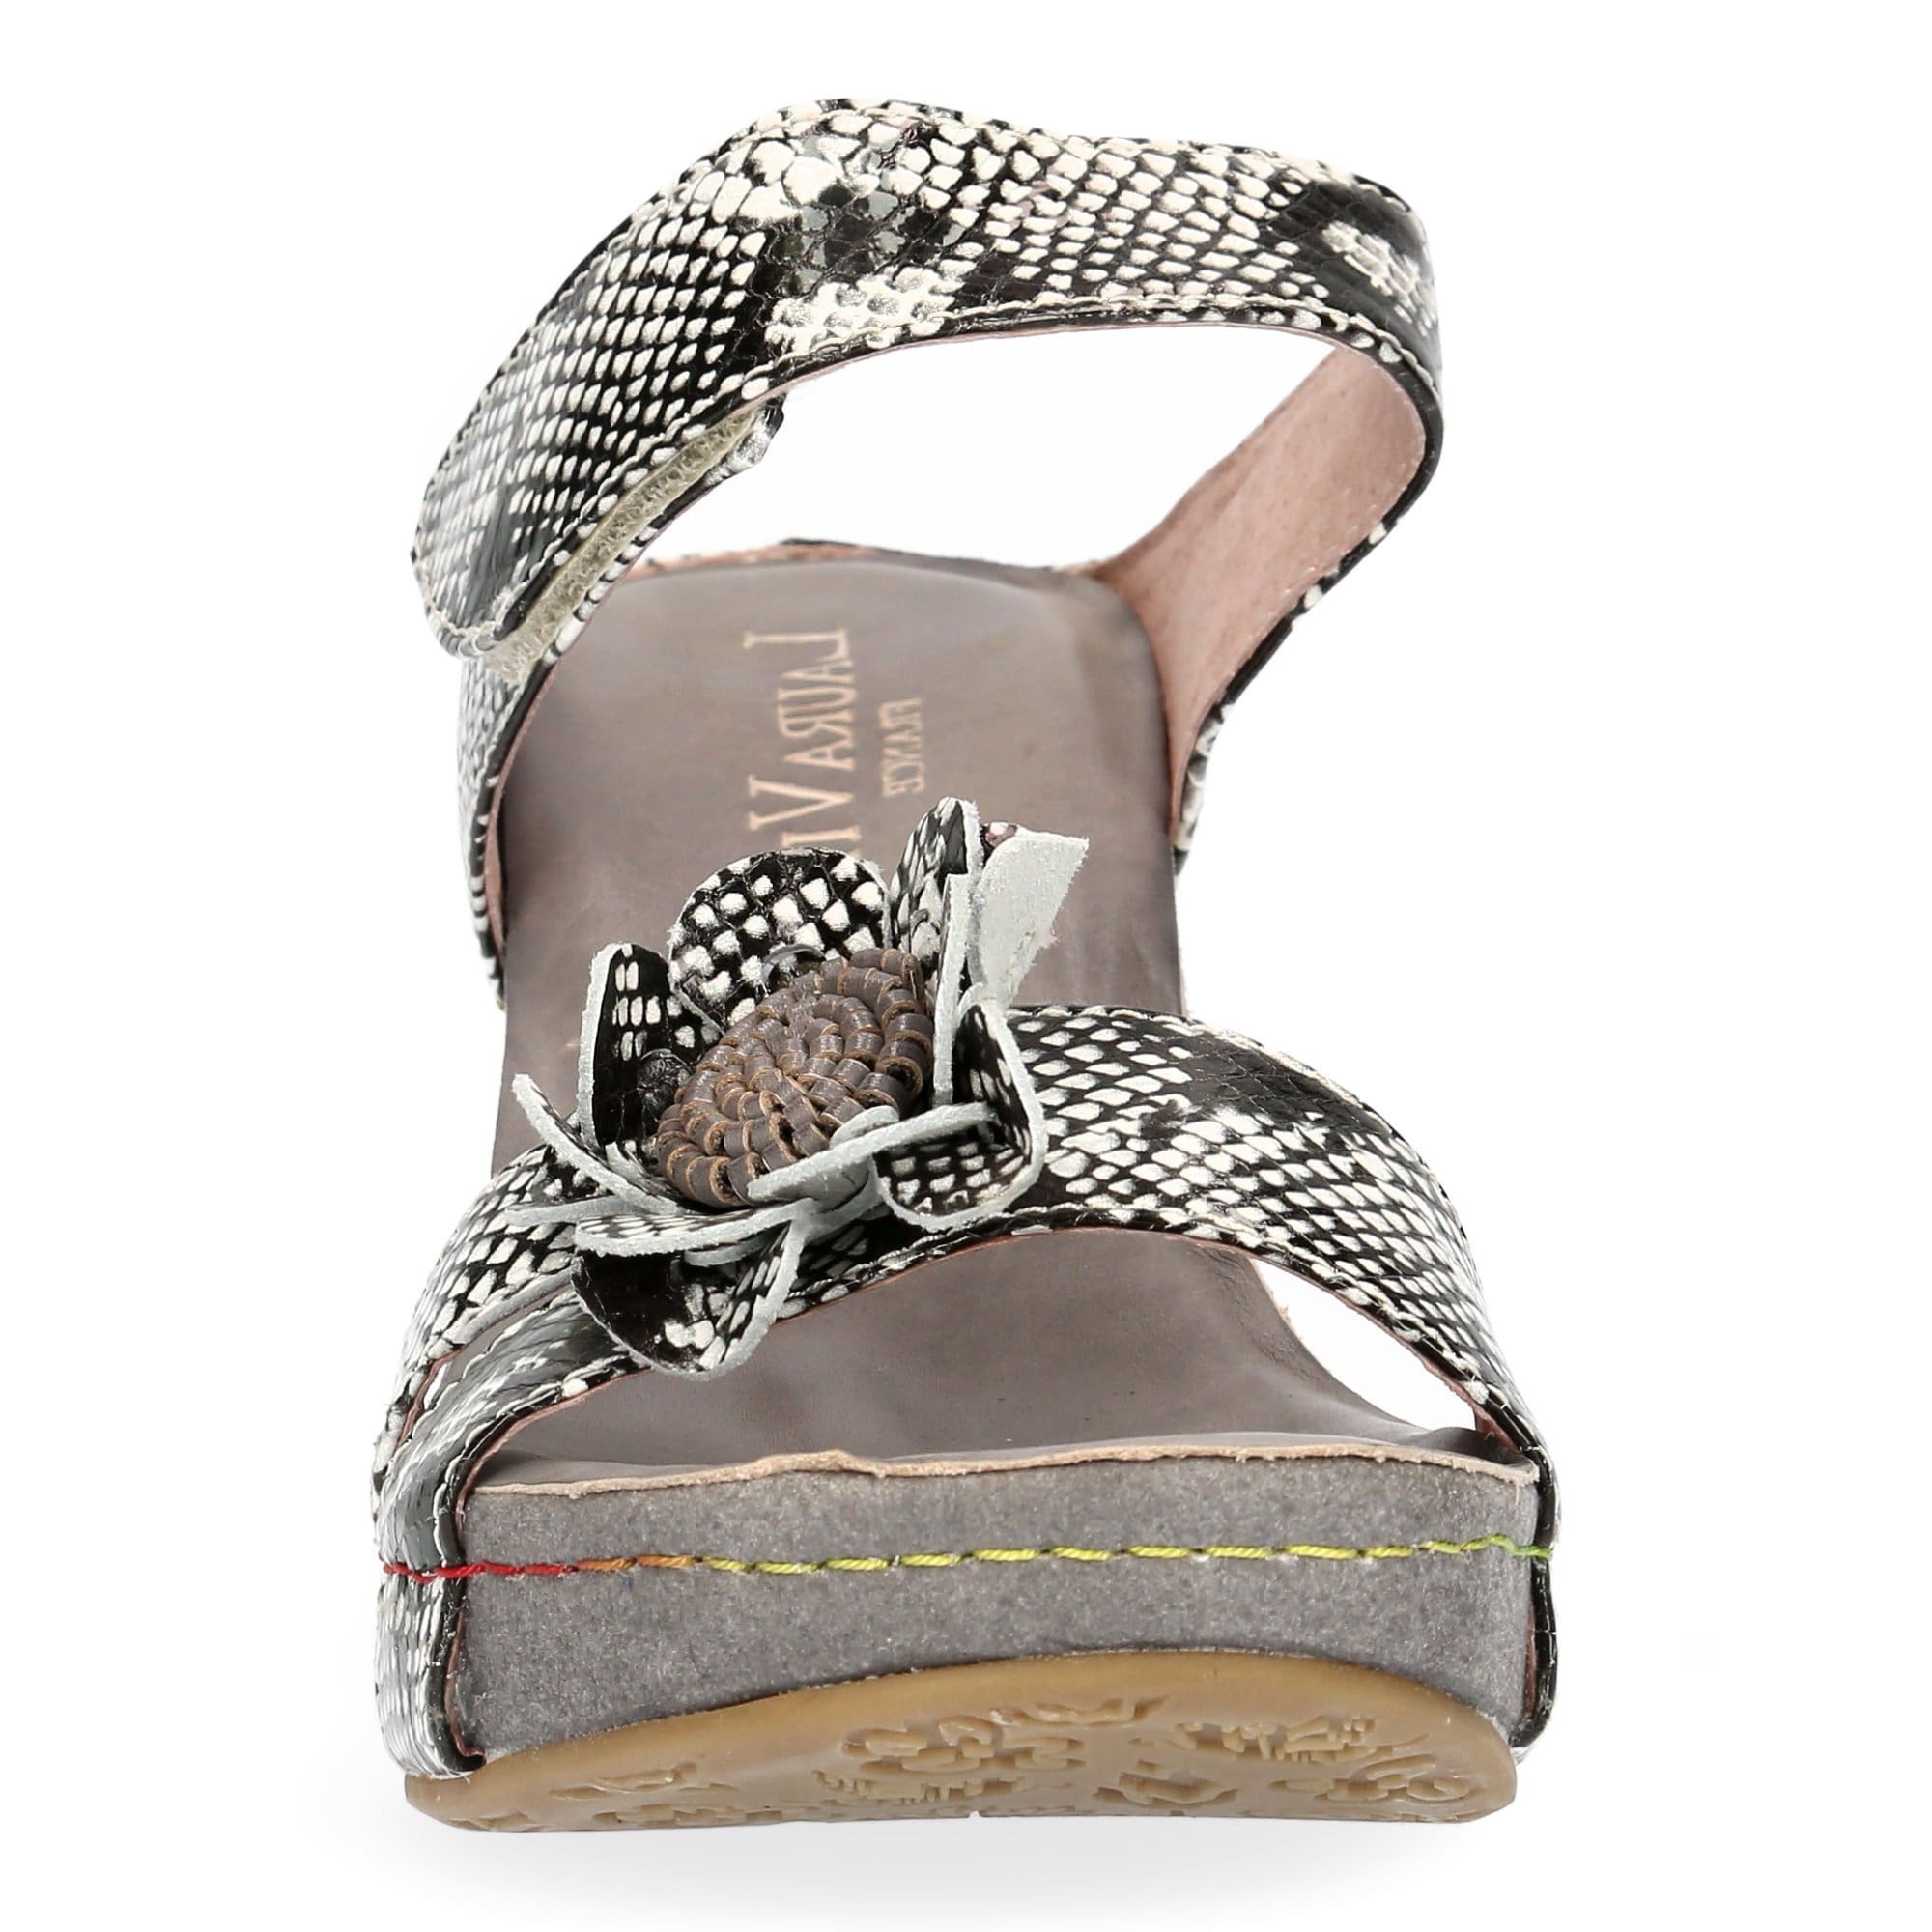 HACIO 03 shoes - Mule